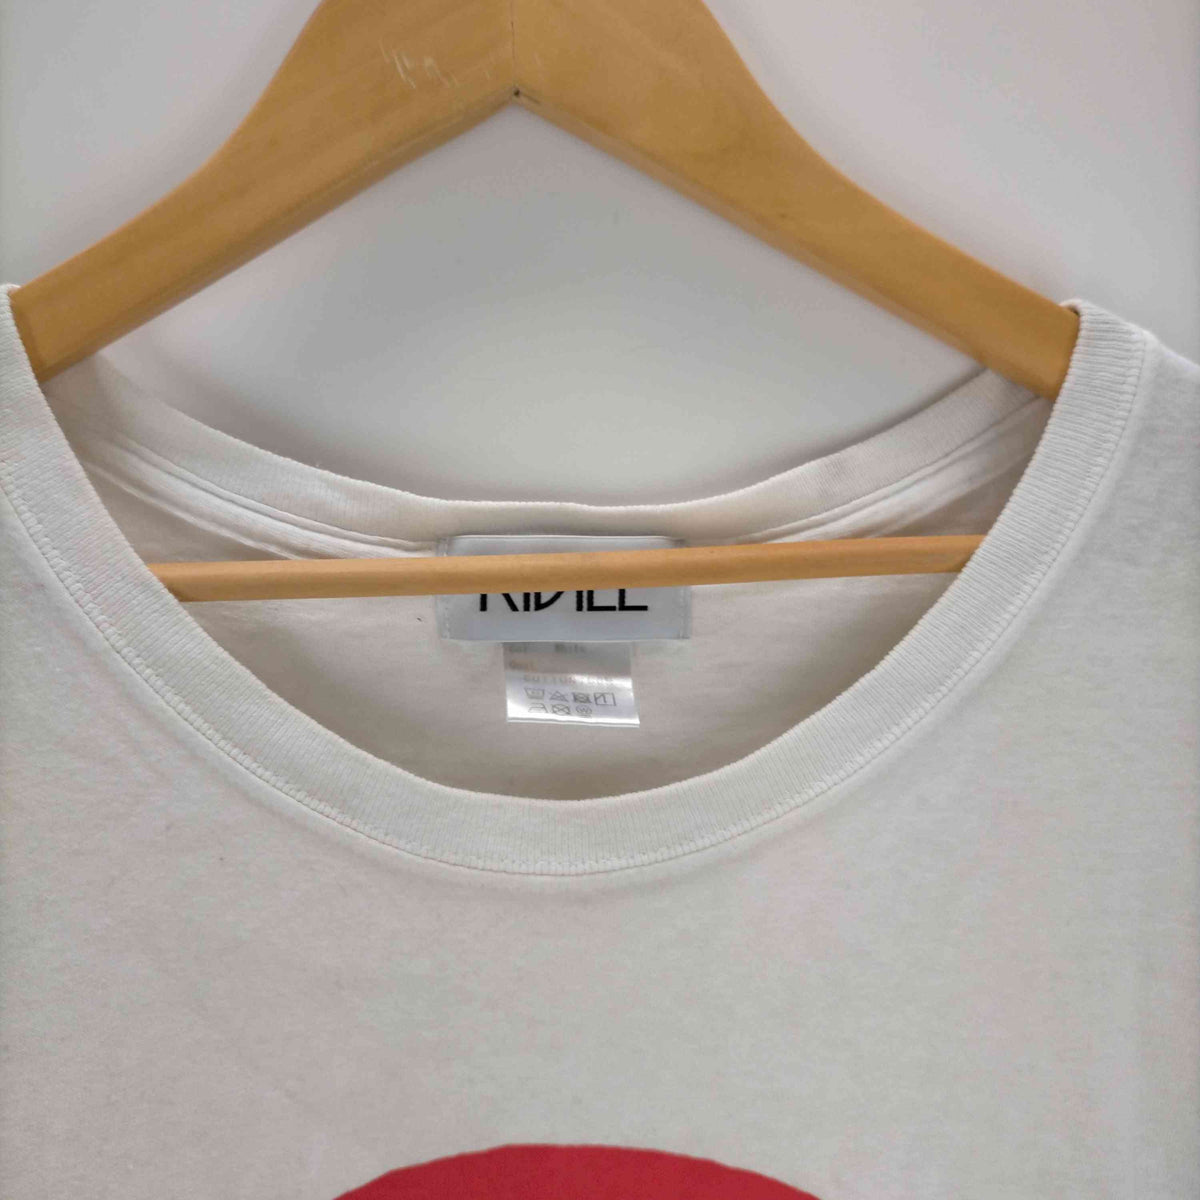 キディル KIDILL Rising Sun Oversize T-shirts メンズ FREE 